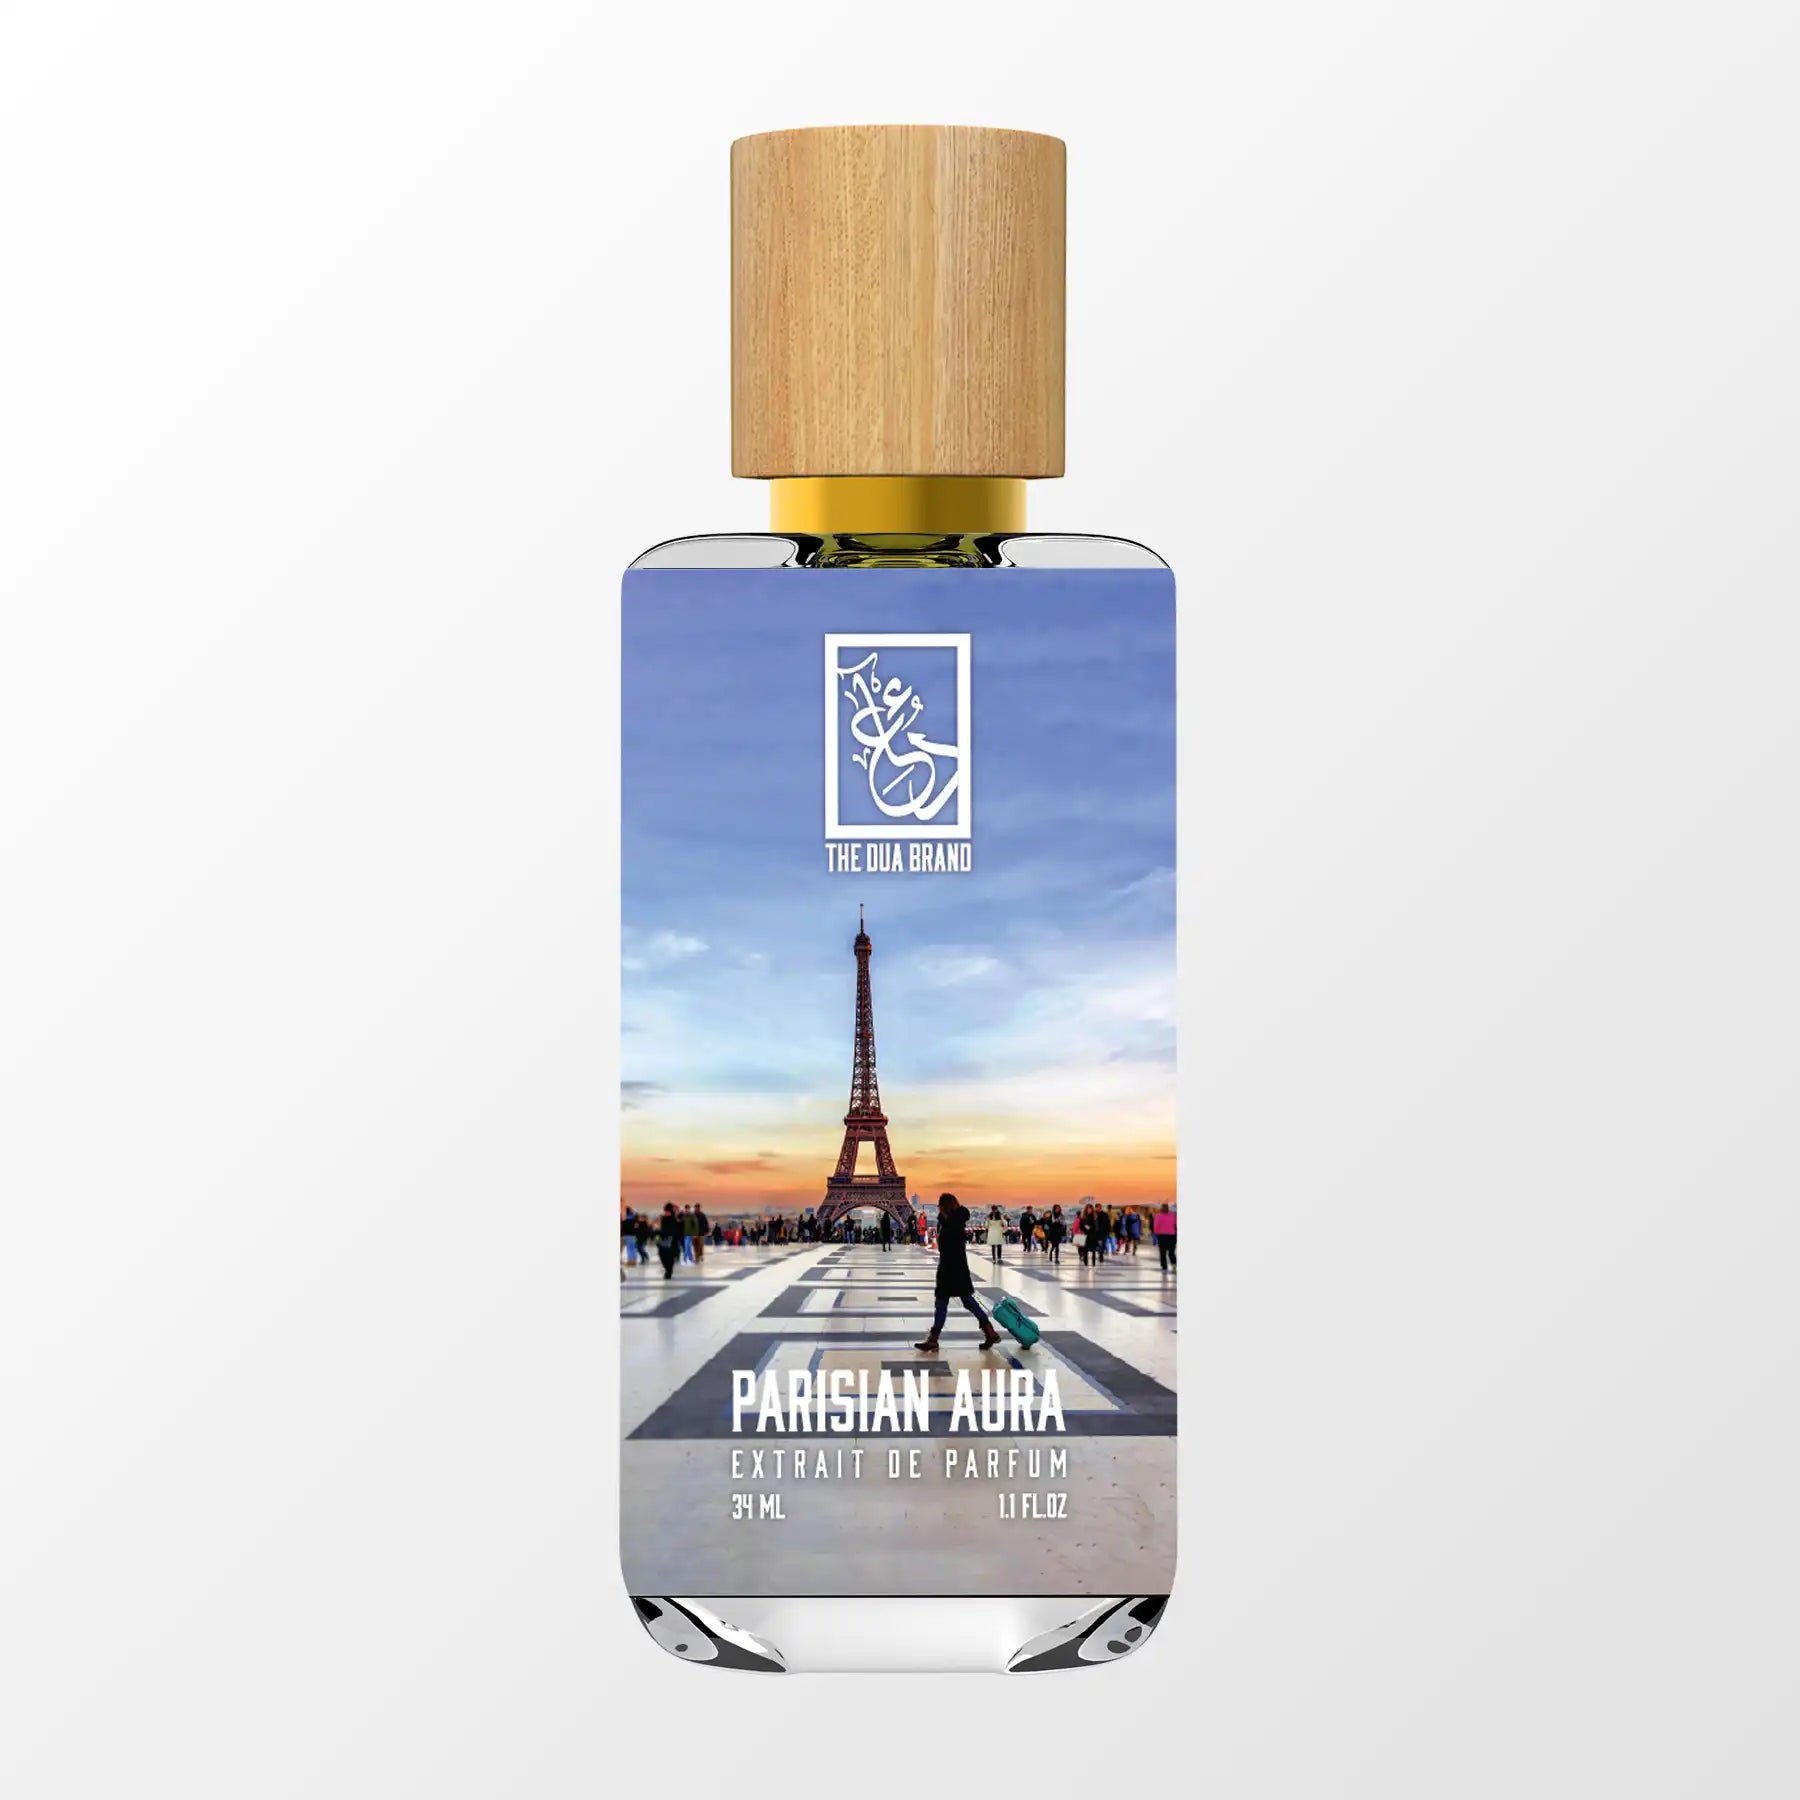 BDK Parfums Gris Charnel Extrait 100ml - Santiago Perfumes